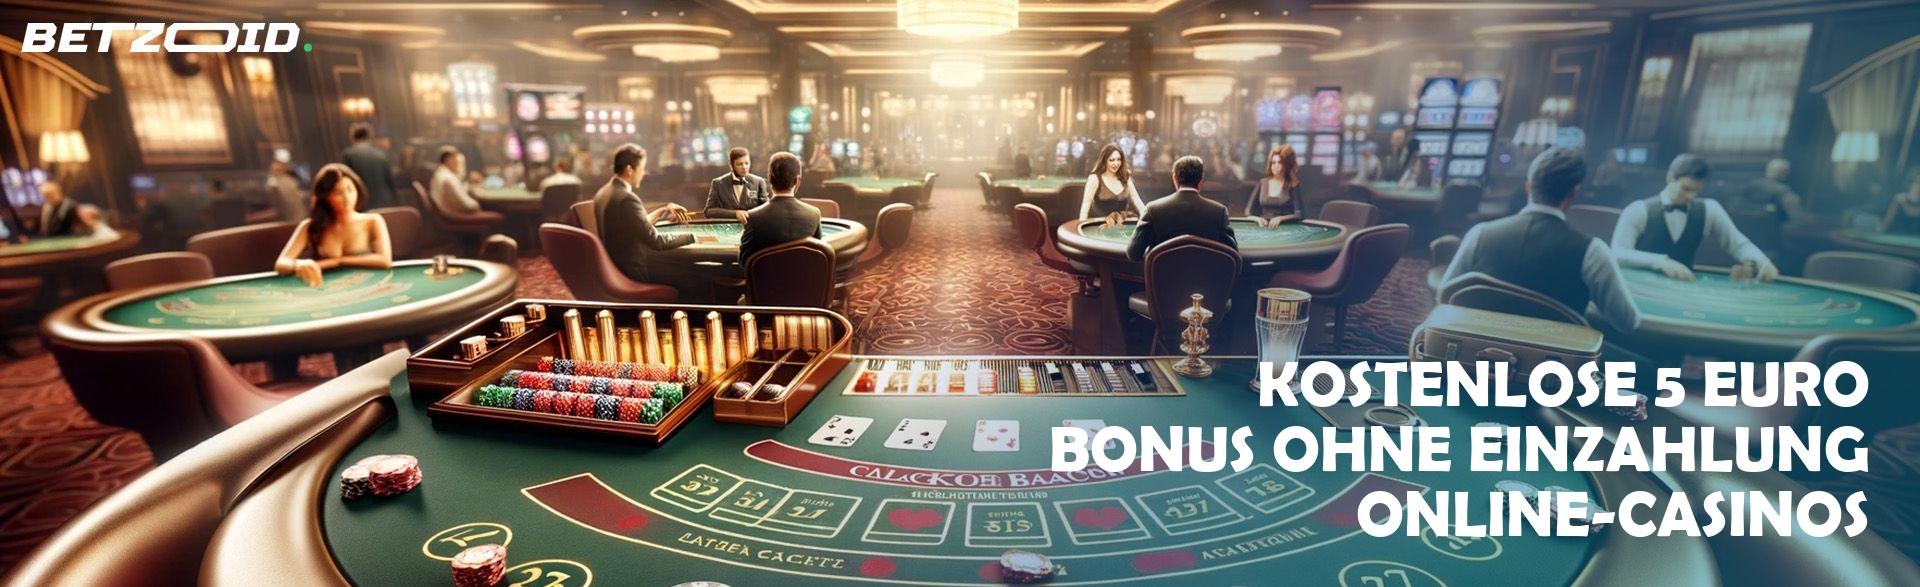 Kostenlose 5 Euro Bonus ohne Einzahlung Online-Casinos.